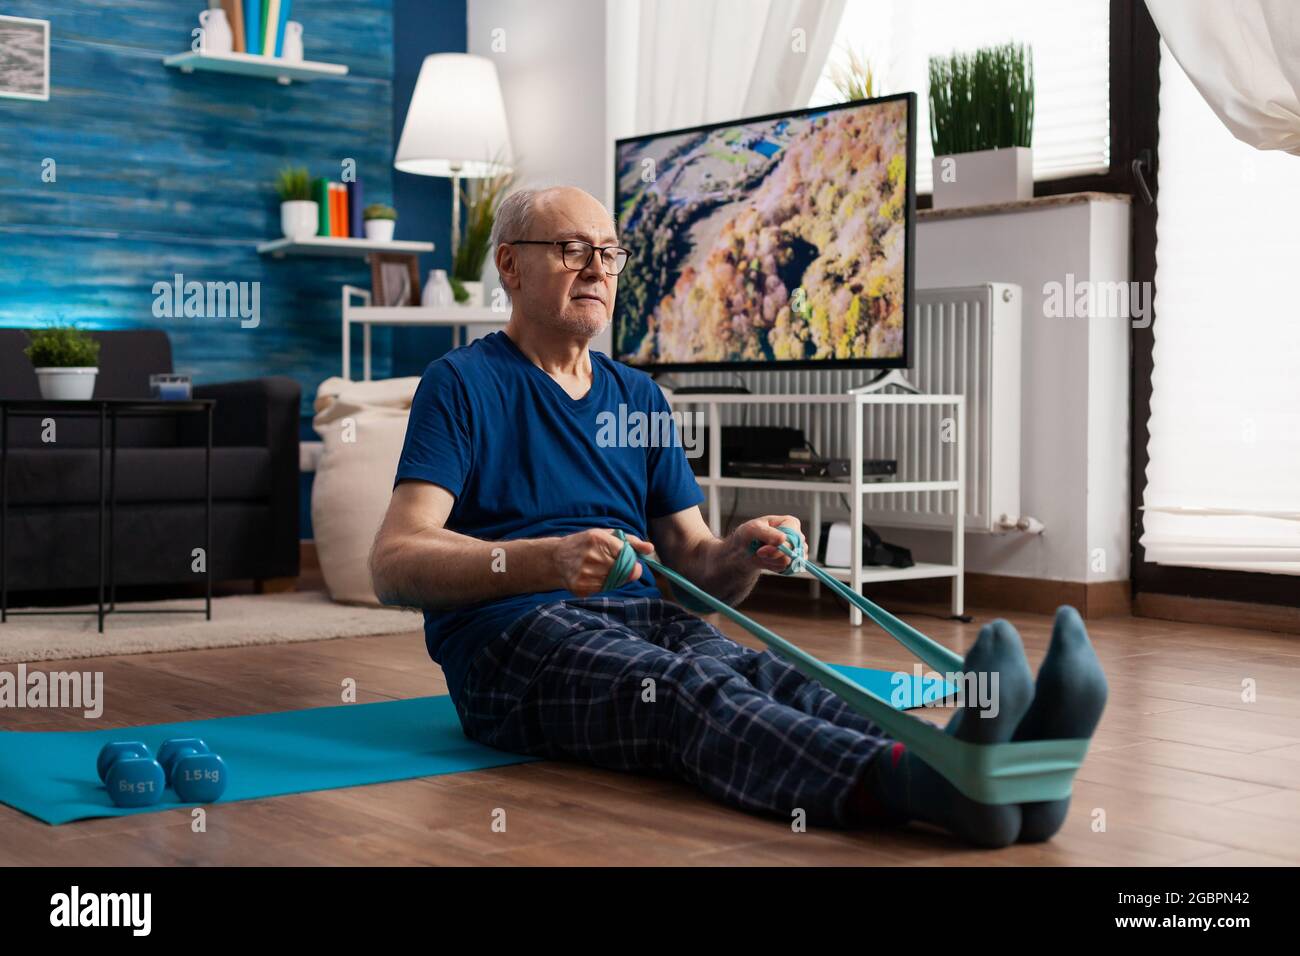 Seniorchef im Ruhestand sitzt auf einer Yogamatte und dehnt die Beine mit einem elastischen Band aus, um die Körperflexibilität zu trainieren. Rentner in Sportbekleidung abnehmen Gewicht beim Muskeltraining im Wohnzimmer Stockfoto